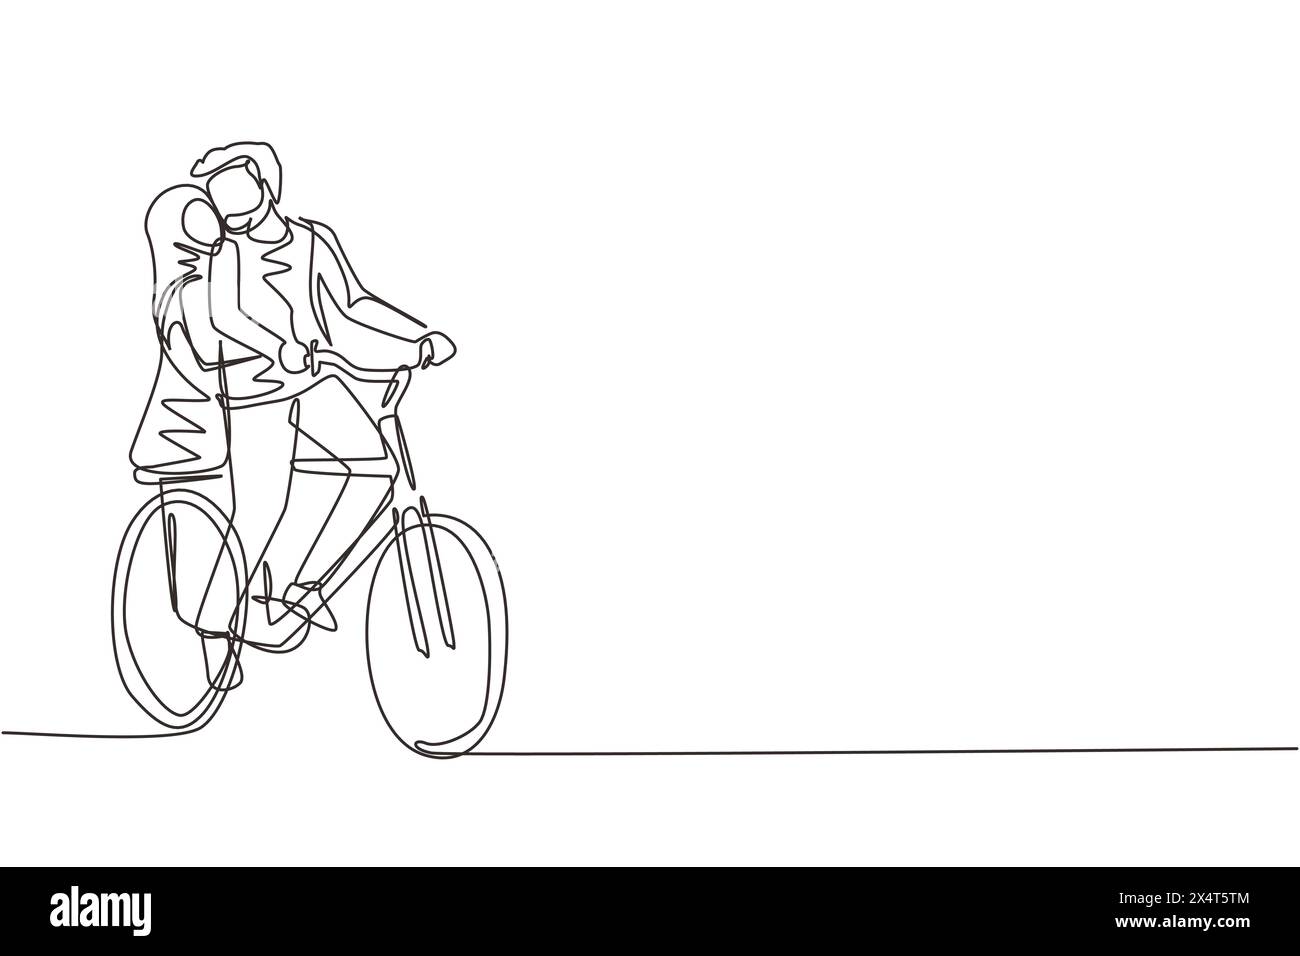 Simple une ligne dessinant jeune couple arabe aimant cyclisme. Relations humaines romantiques, histoire d'amour, famille nouvellement mariée dans l'aventure de voyage de lune de miel, pass Illustration de Vecteur